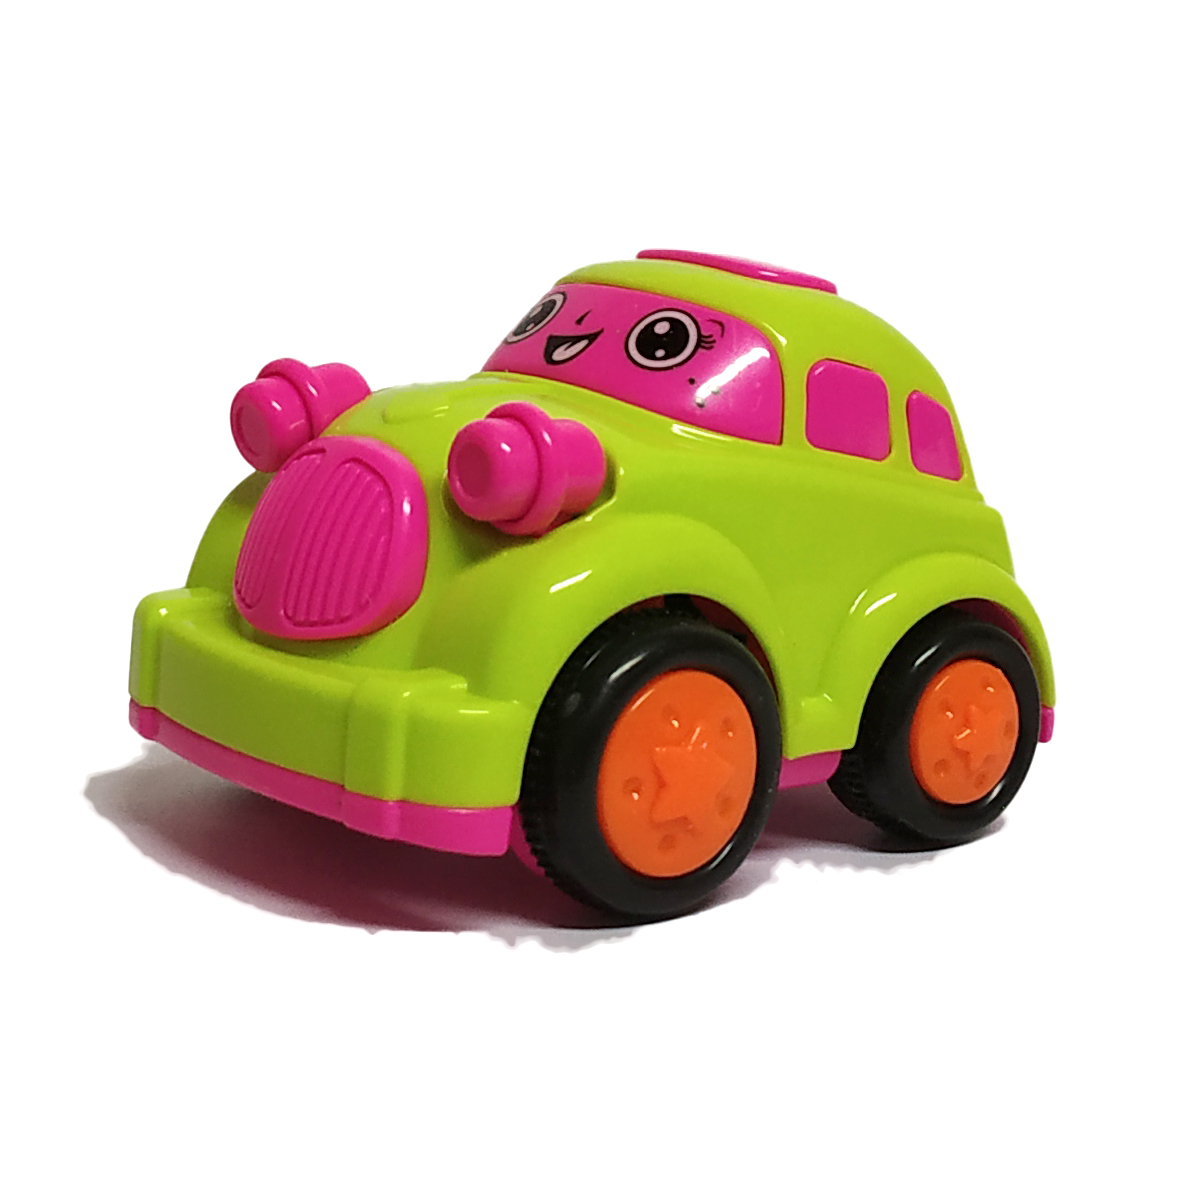 Bittle car - Green & Pink